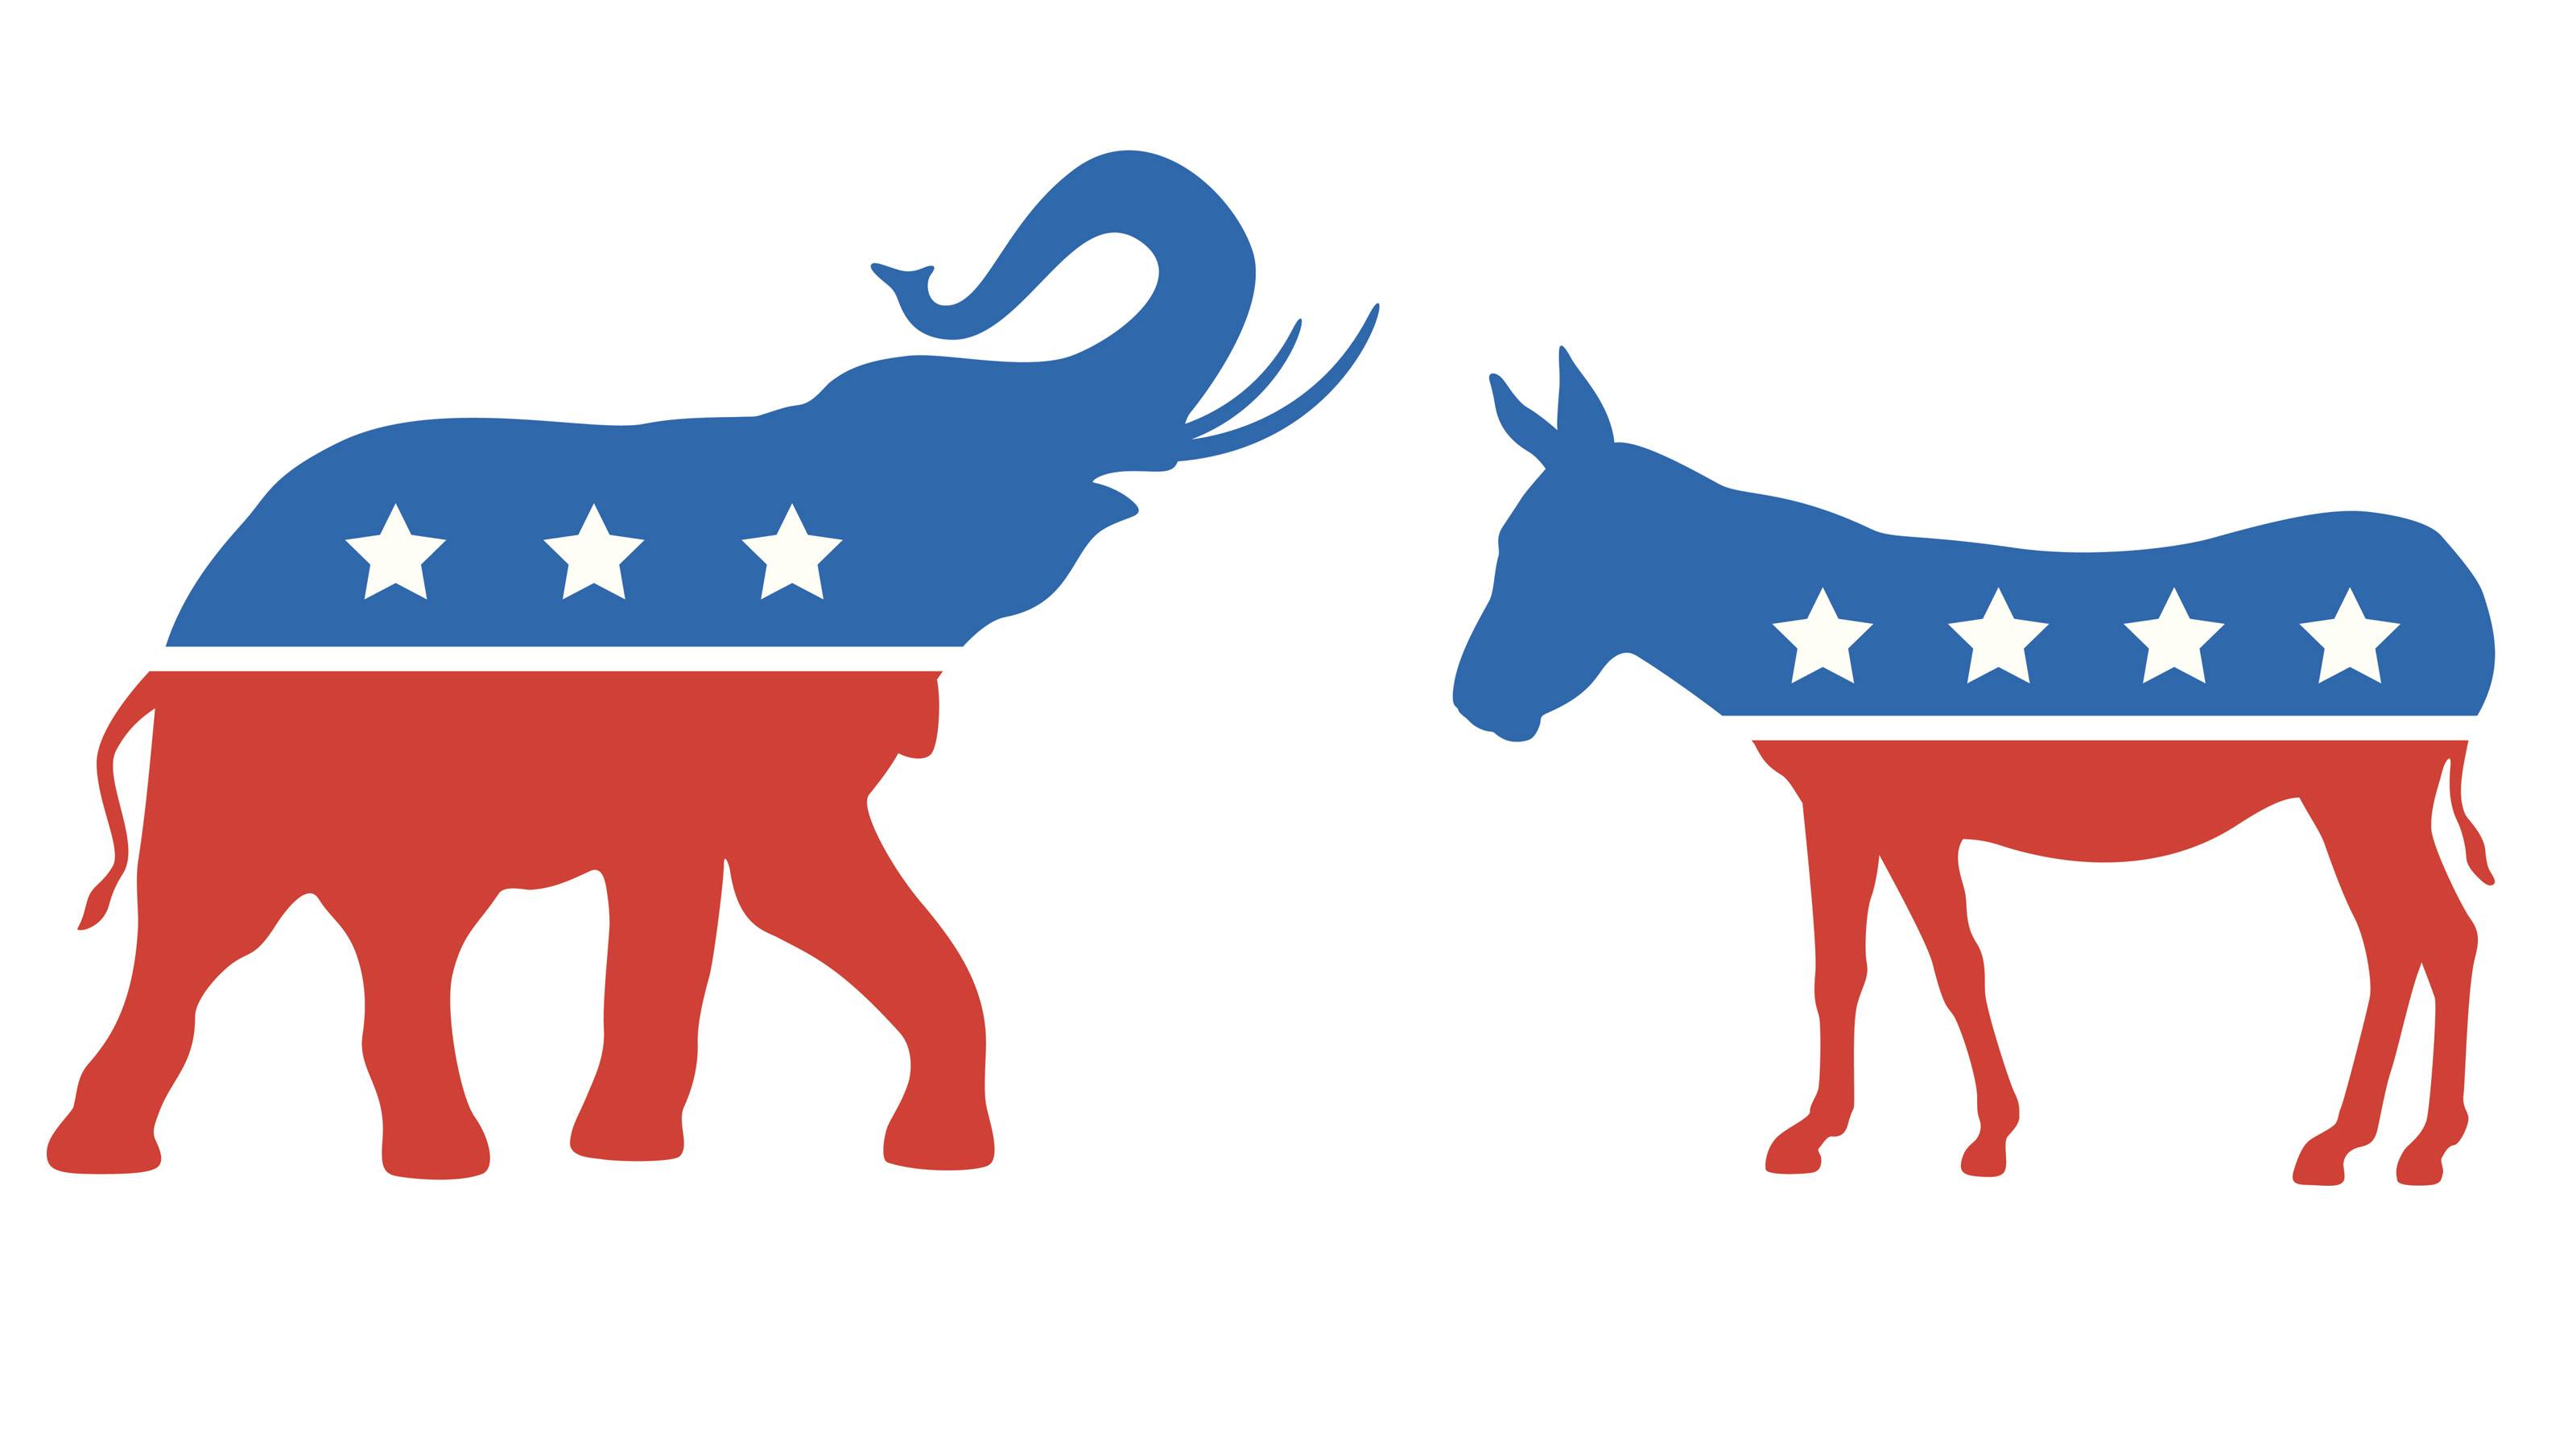 GOP elephant/Democratic donkey